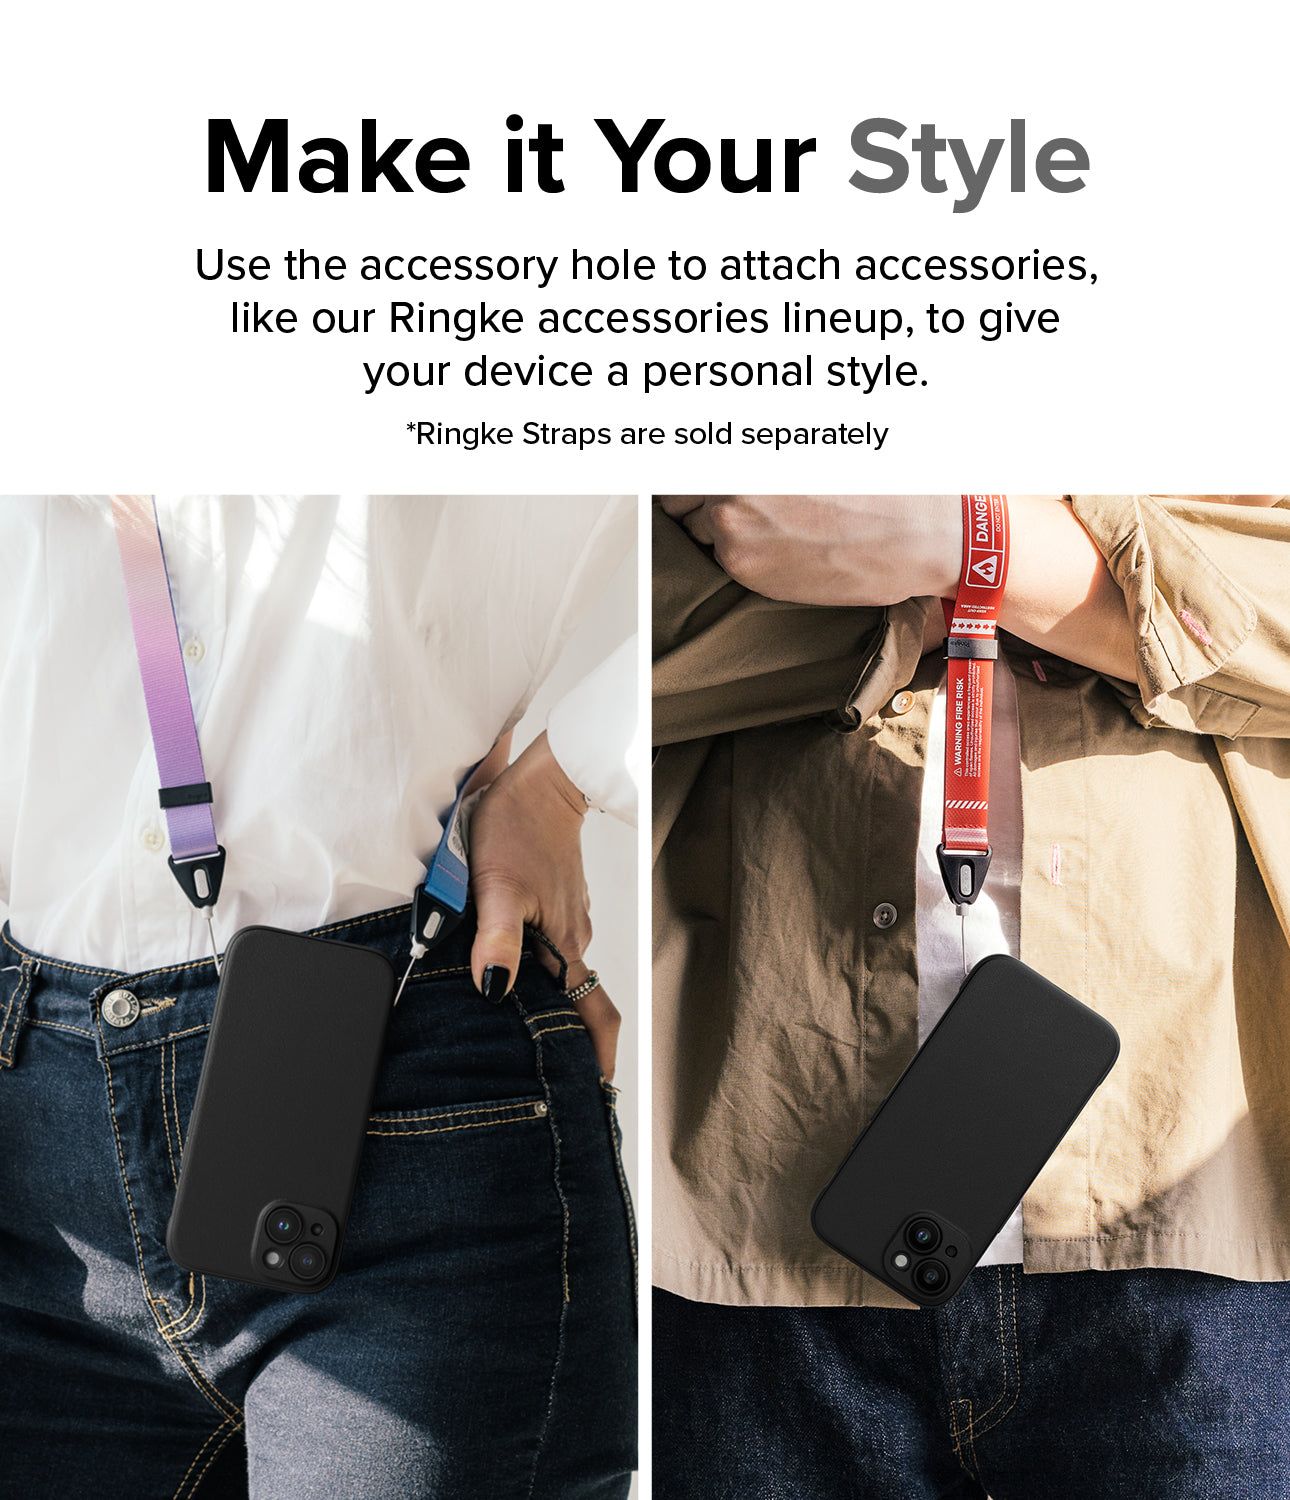 Ốp lưng iPhone 15 | Onyx Magnet - Biến nó thành phong cách của bạn. Sử dụng lỗ phụ kiện để gắn các phụ kiện, chẳng hạn như dòng phụ kiện Ringke của chúng tôi, nhằm tạo phong cách cá nhân cho thiết bị của bạn.